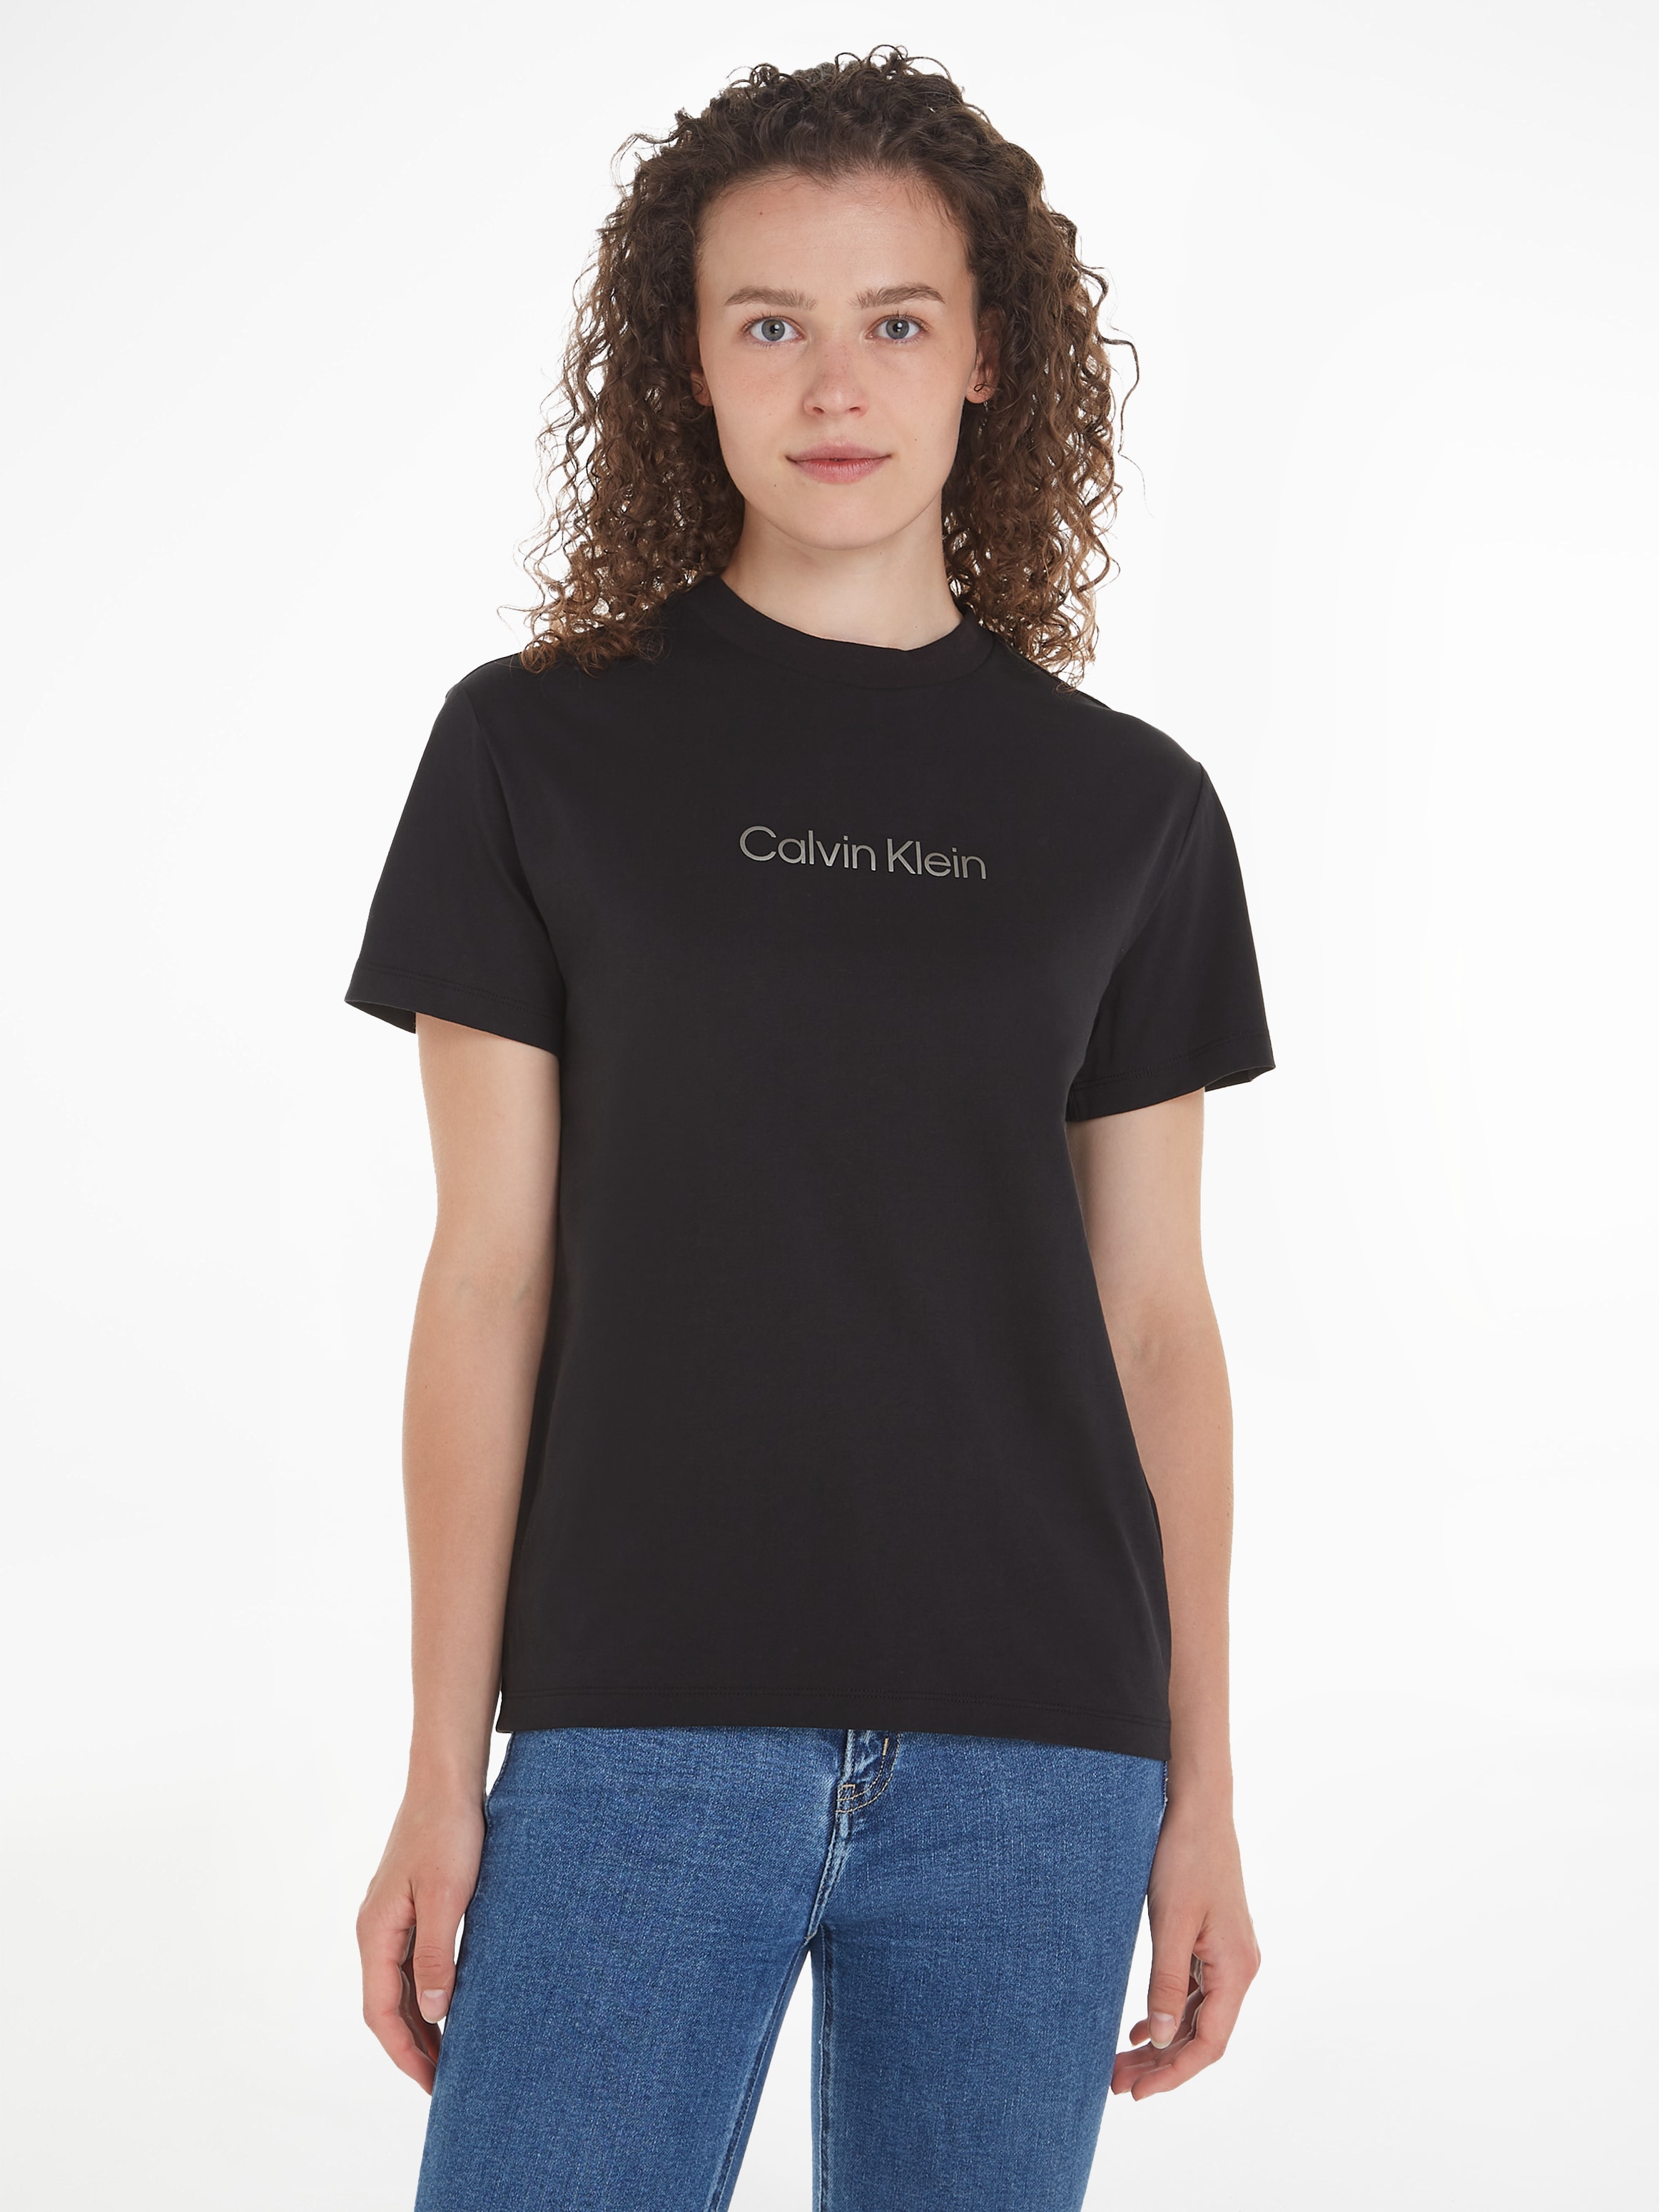 T-Shirt Print T-SHIRT«, der Calvin Klein Brust Calvin »HERO METALLIC auf LOGO mit kaufen Klein